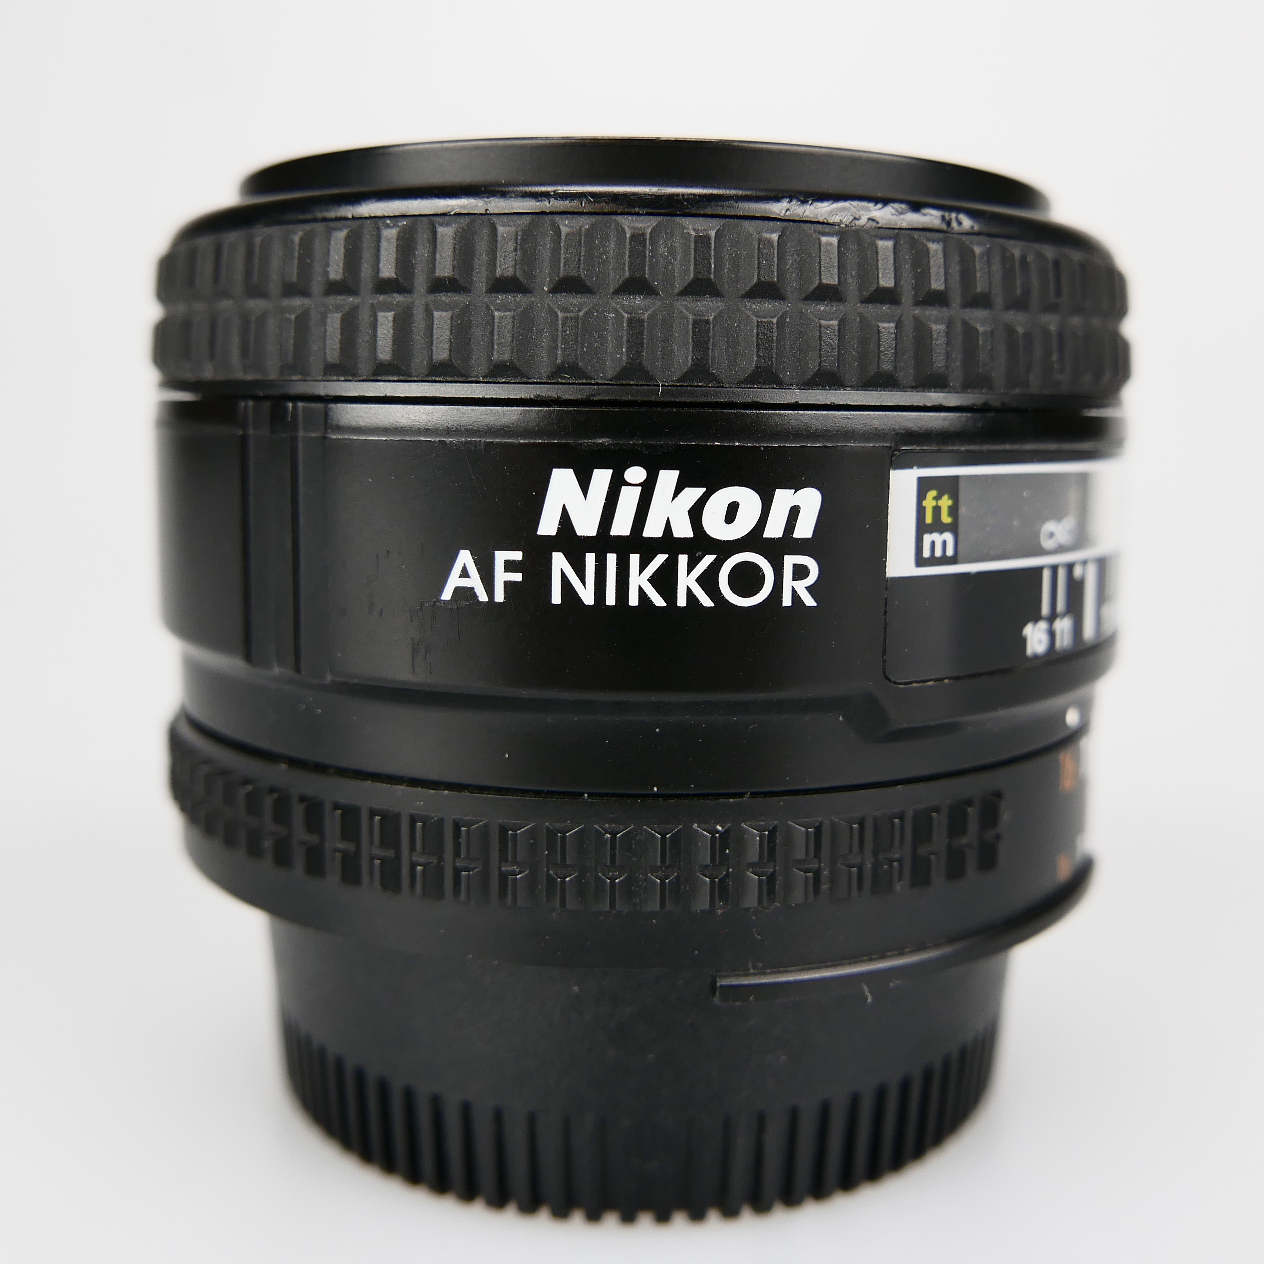 (Myyty) Nikon AF Nikkor 50mm f/1.4D (käytetty)